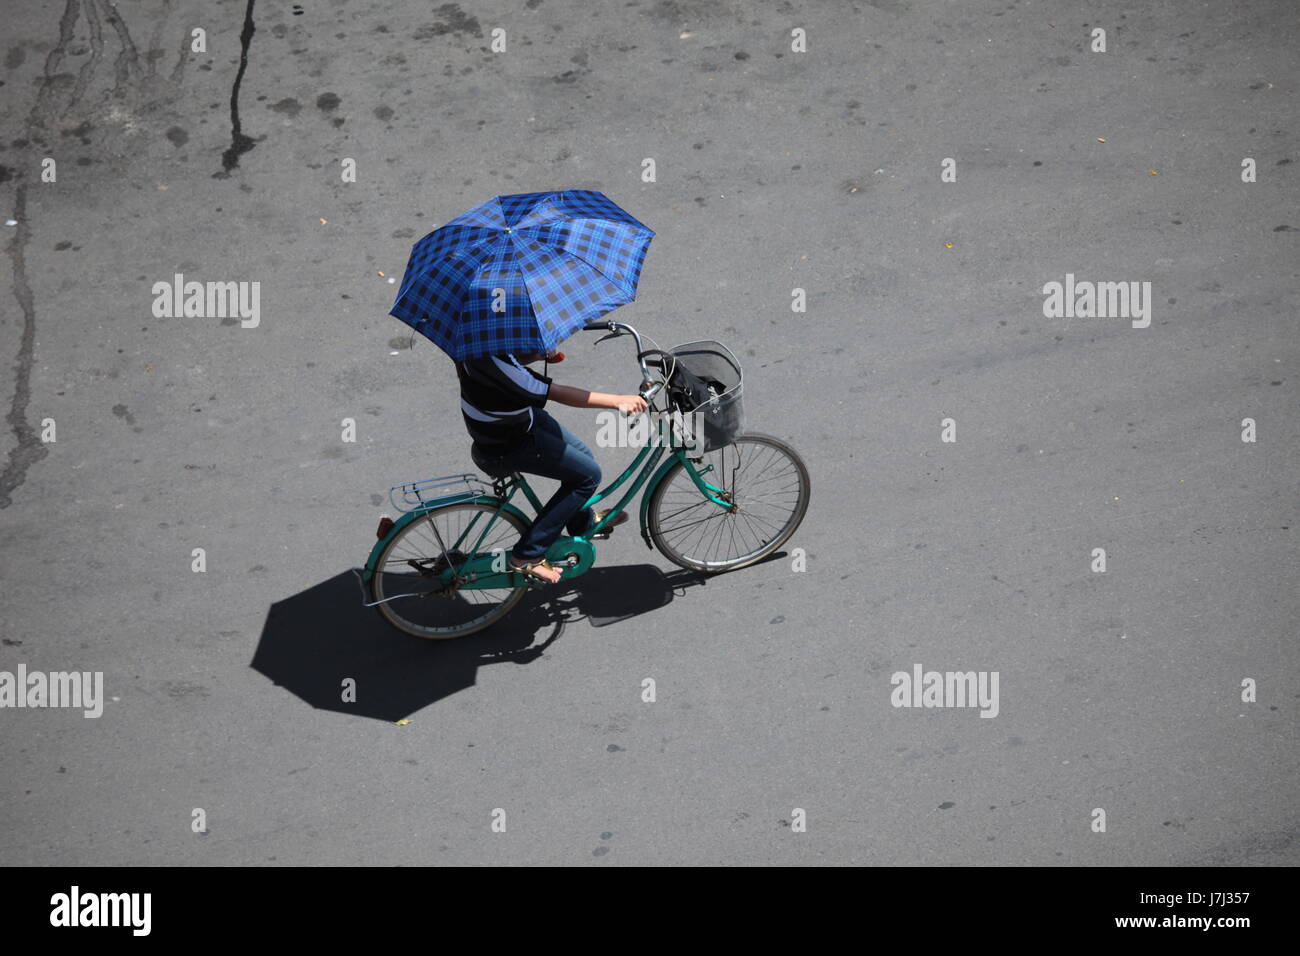 Asien Regenschirm Sonnenschirm Viet Nam Vietnam Fahrrad Fahrrad Zyklus Asien Regenschirm Stockfoto